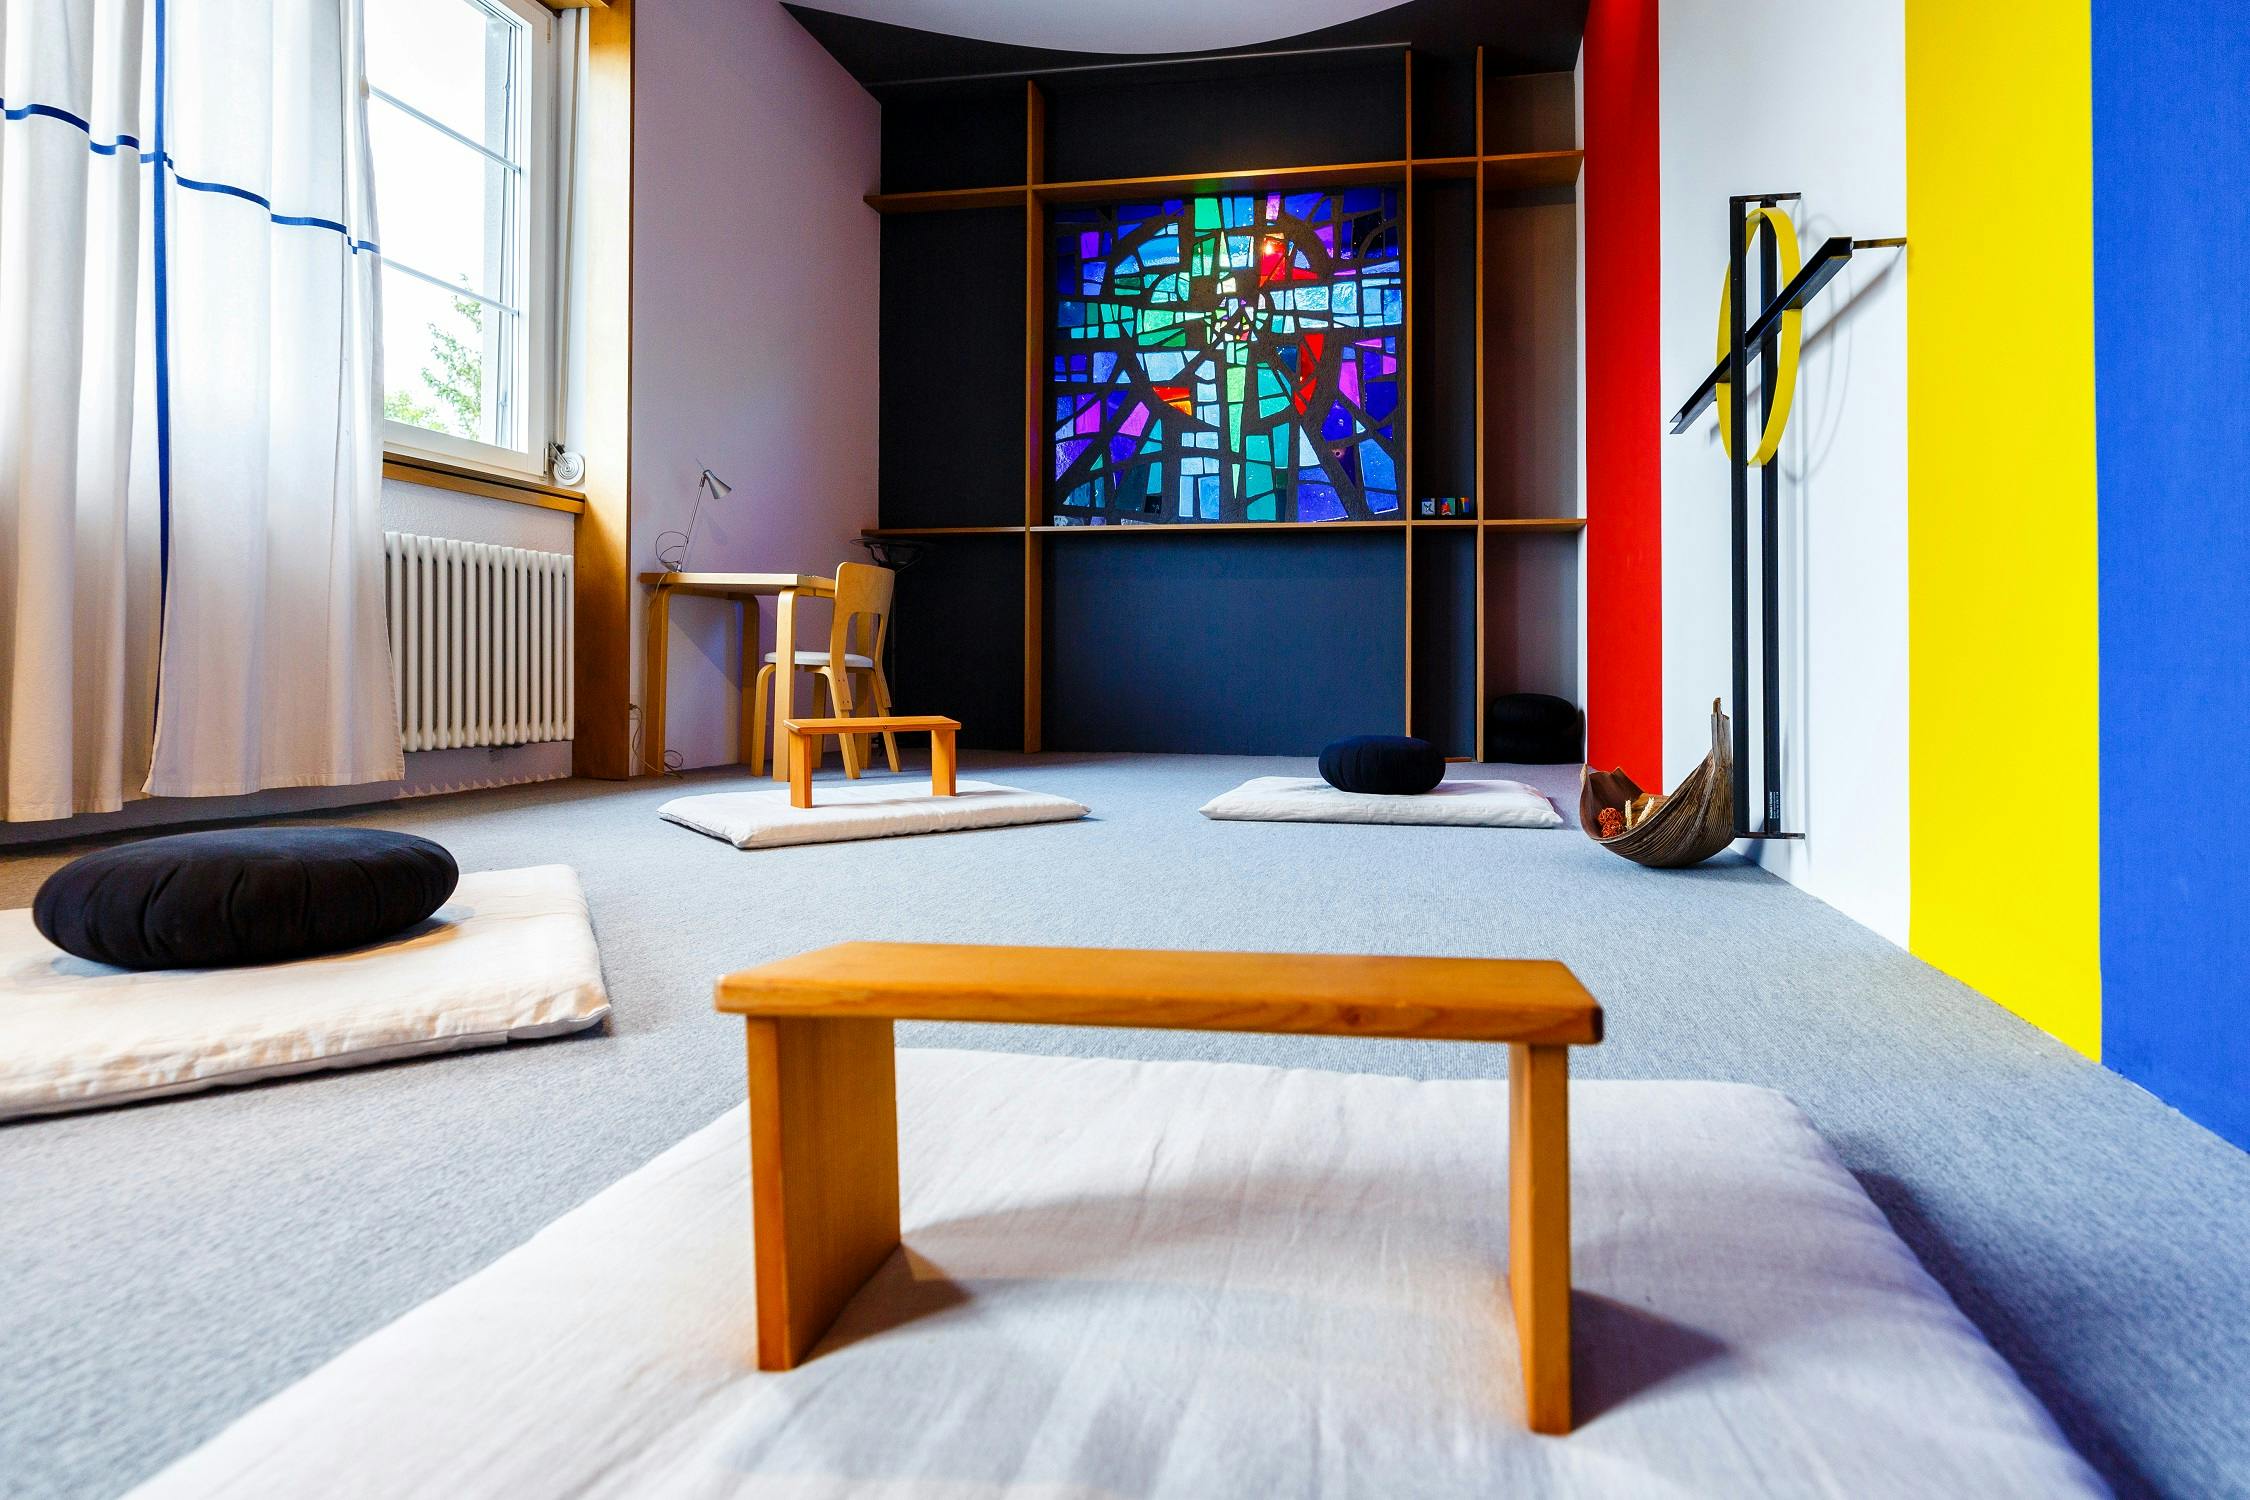 Moderner Meditationsraum mit buntem Kirchenfenster, Kissen und Holzmöbeln.